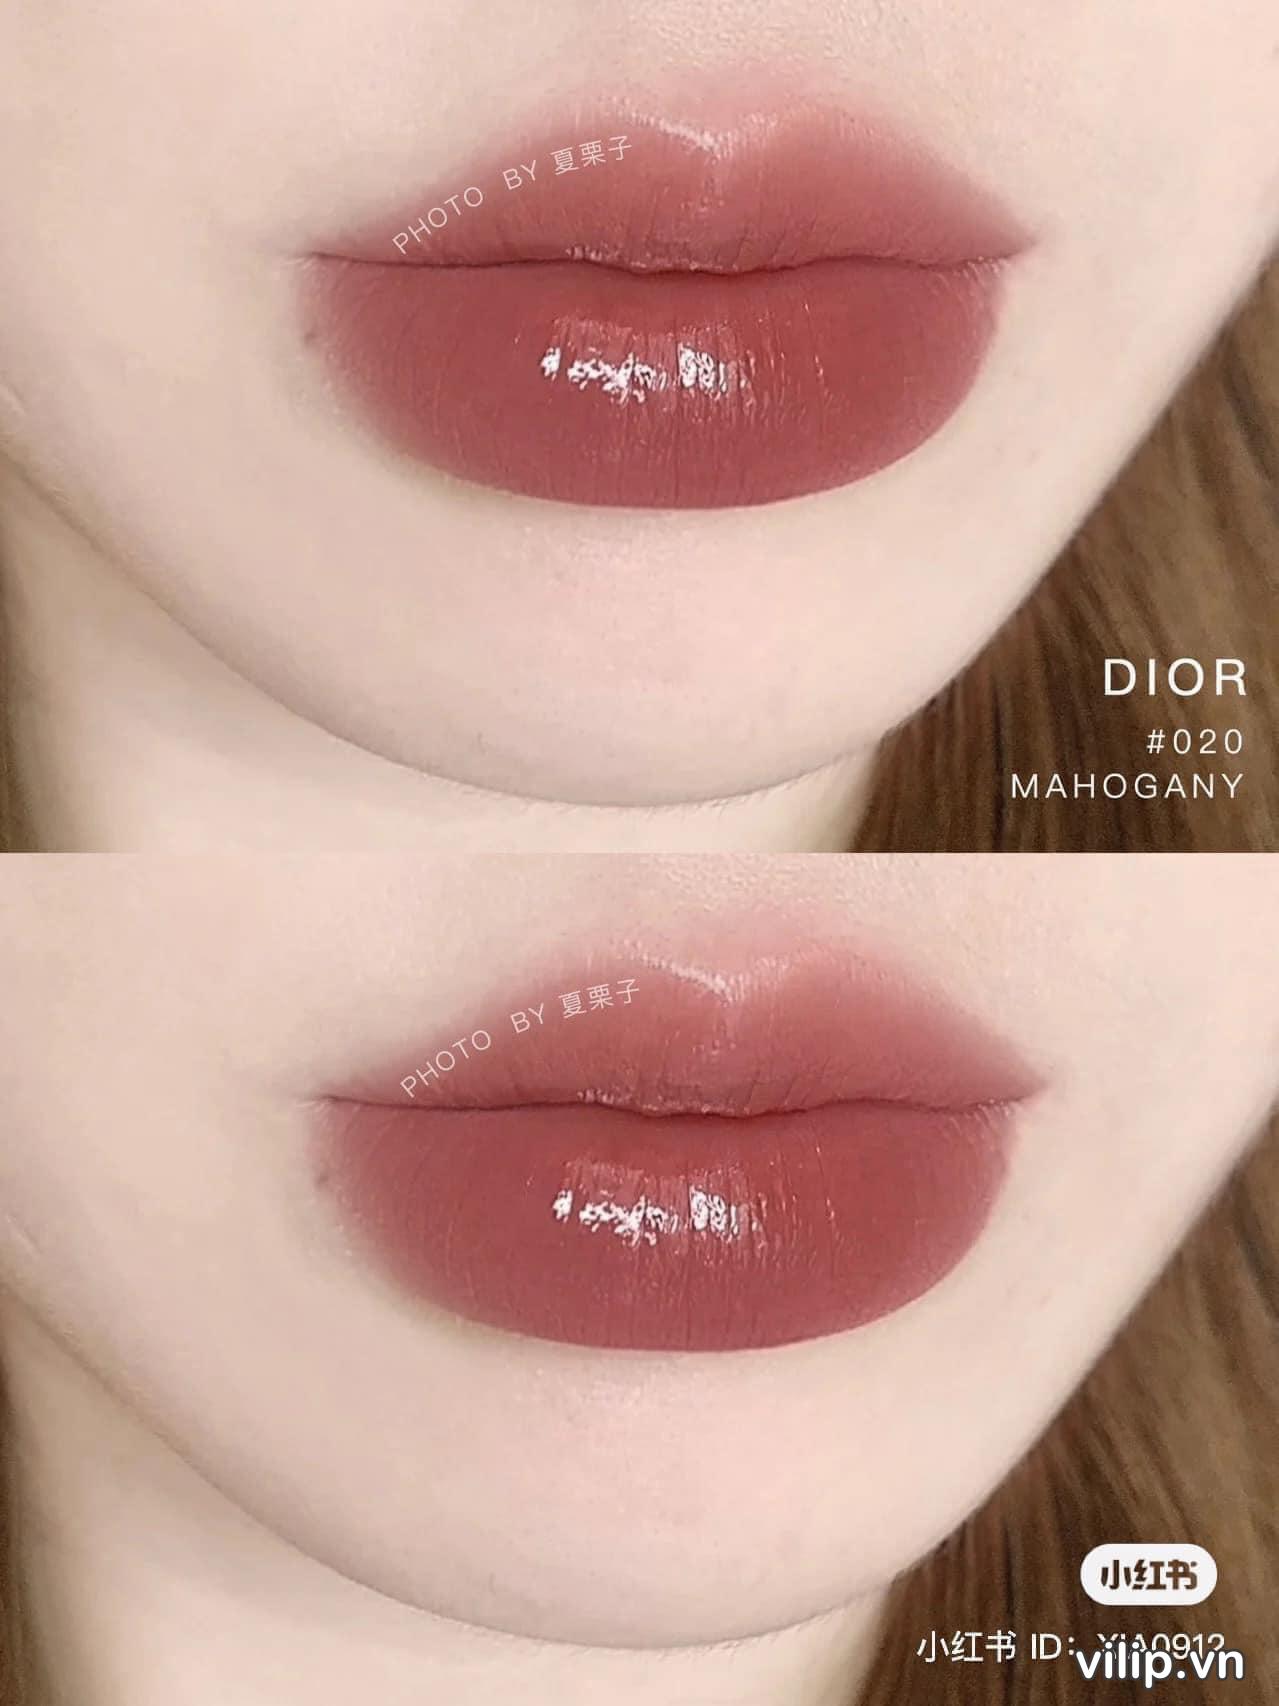 Son Dưỡng Dior Addict Lip Glow 020 Mahogany Màu Đỏ Nâu 15